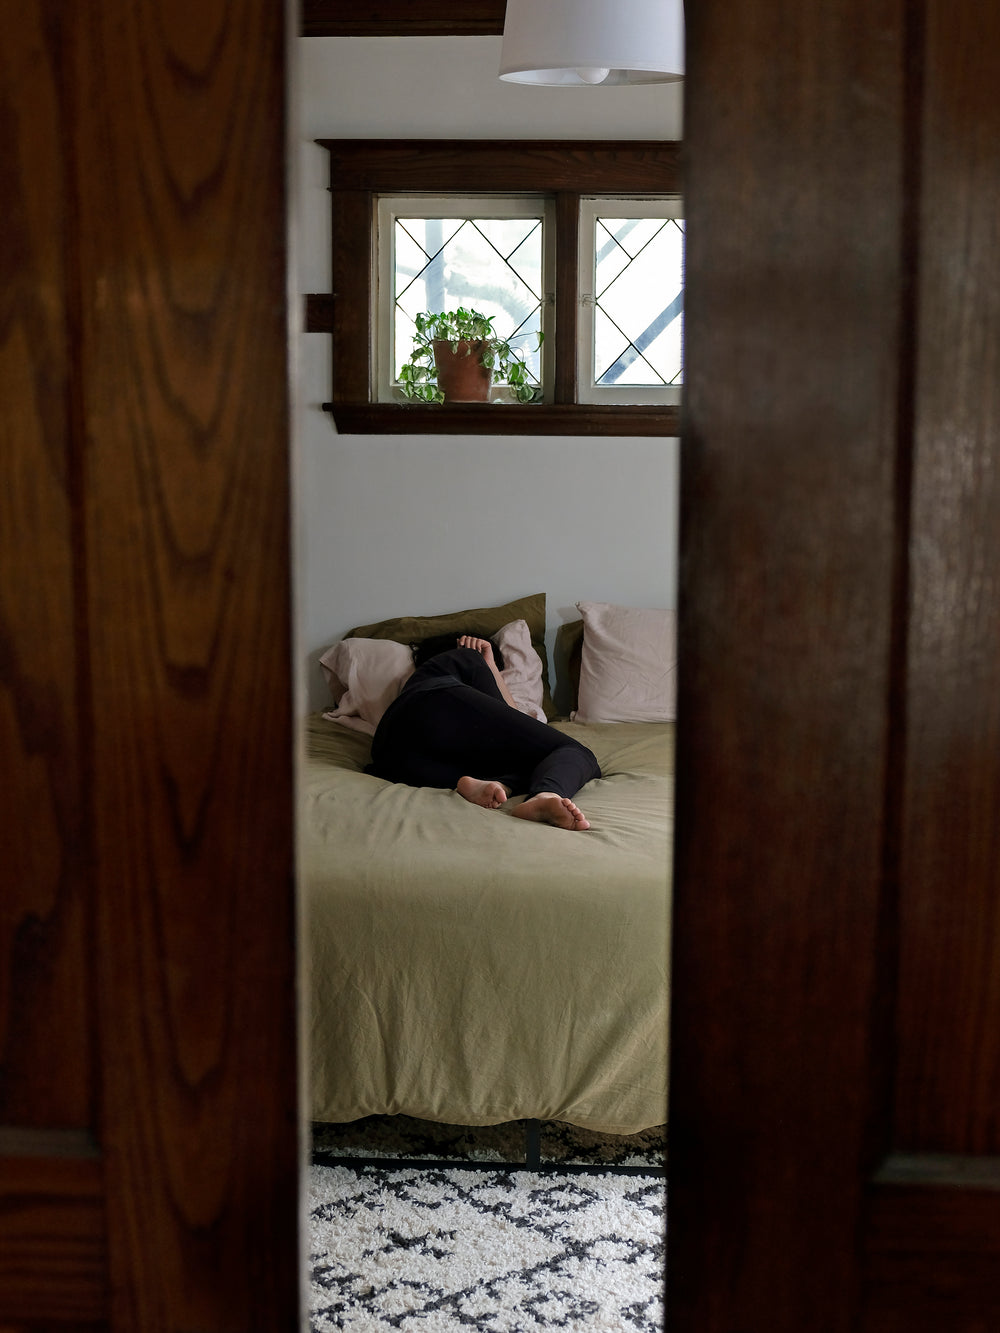 person sleeping in bed viewed between open doors